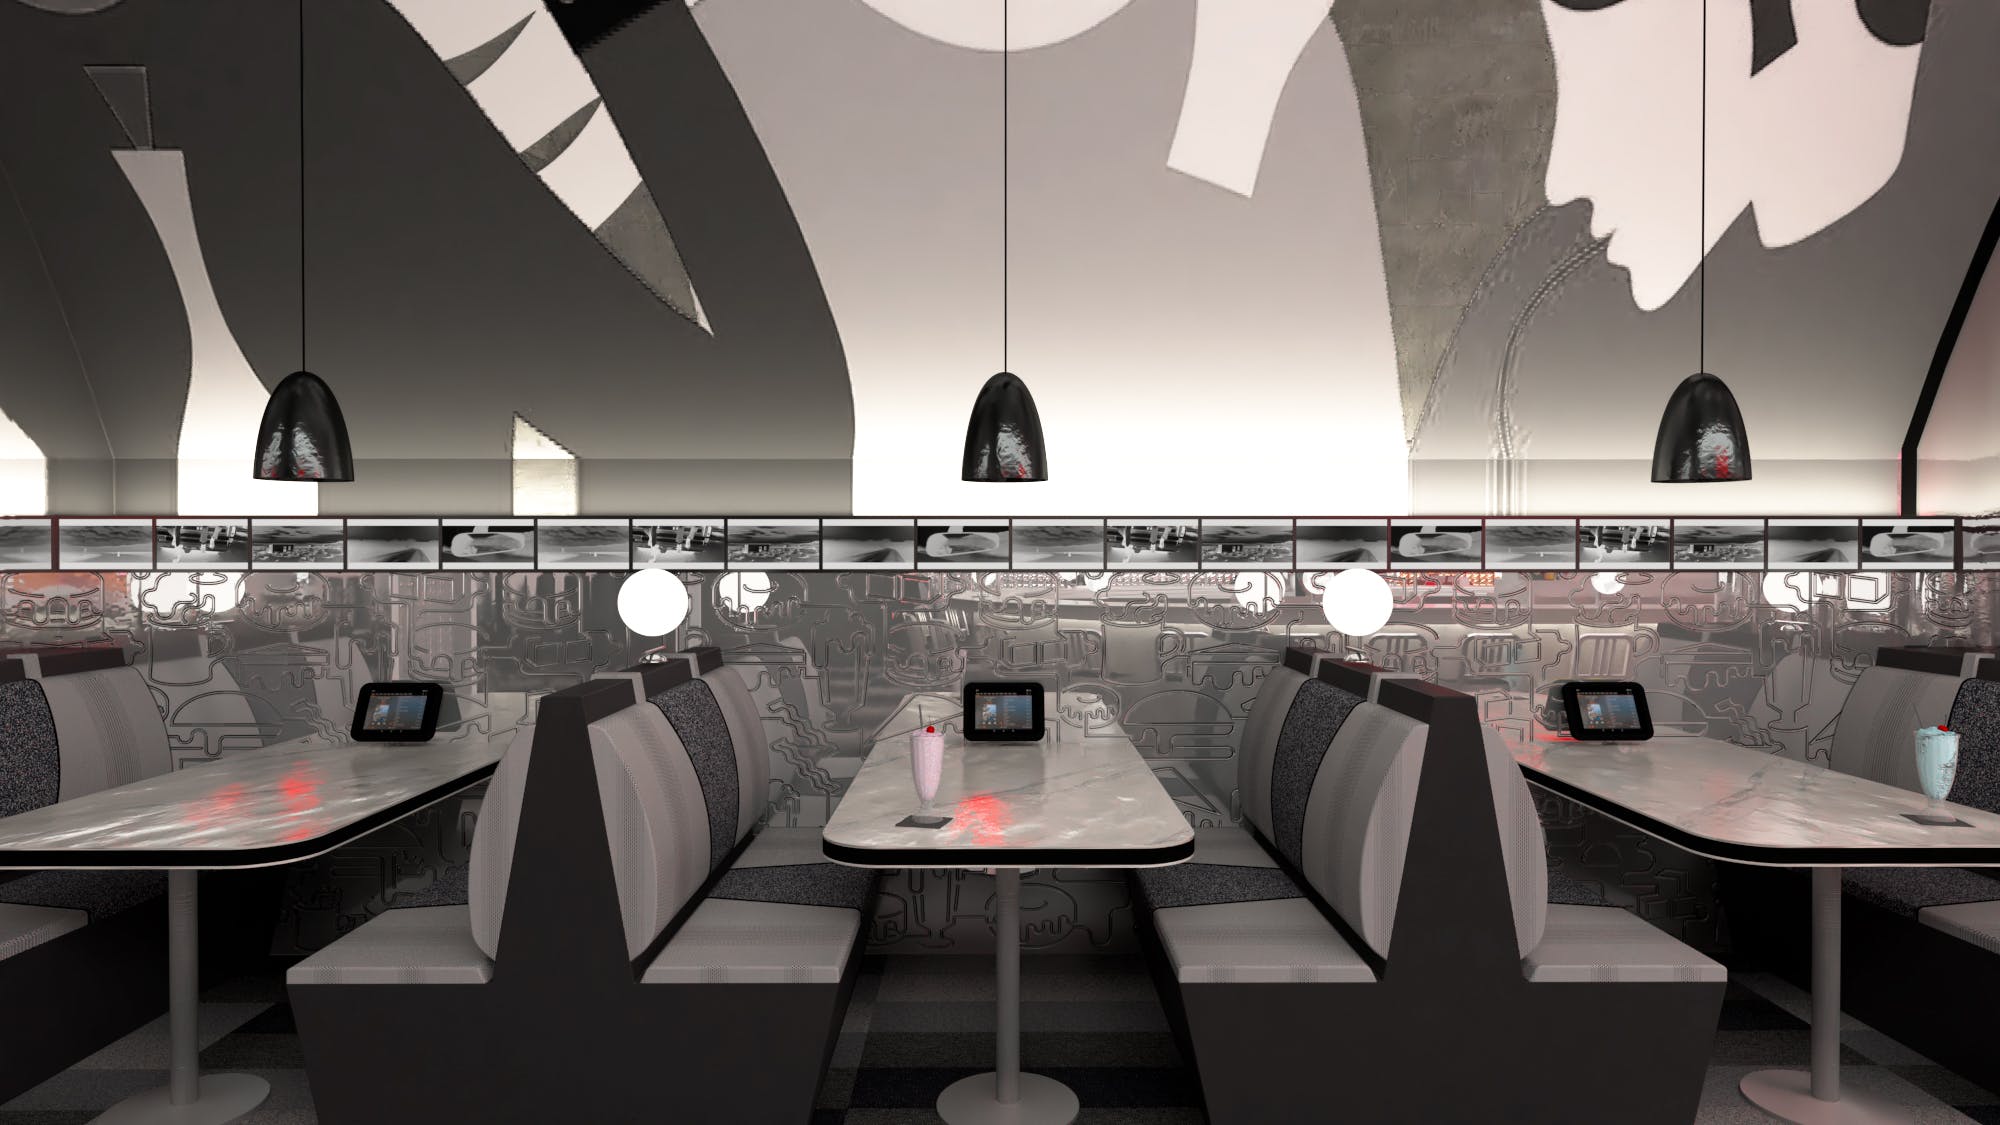 Imagem número 34 da actual secção de David Rockwell e o estúdio de design 2×4 escolhem as superfícies inovadoras da Cosentino para o The Diner no Salão do Móvel 2018 da Cosentino Portugal